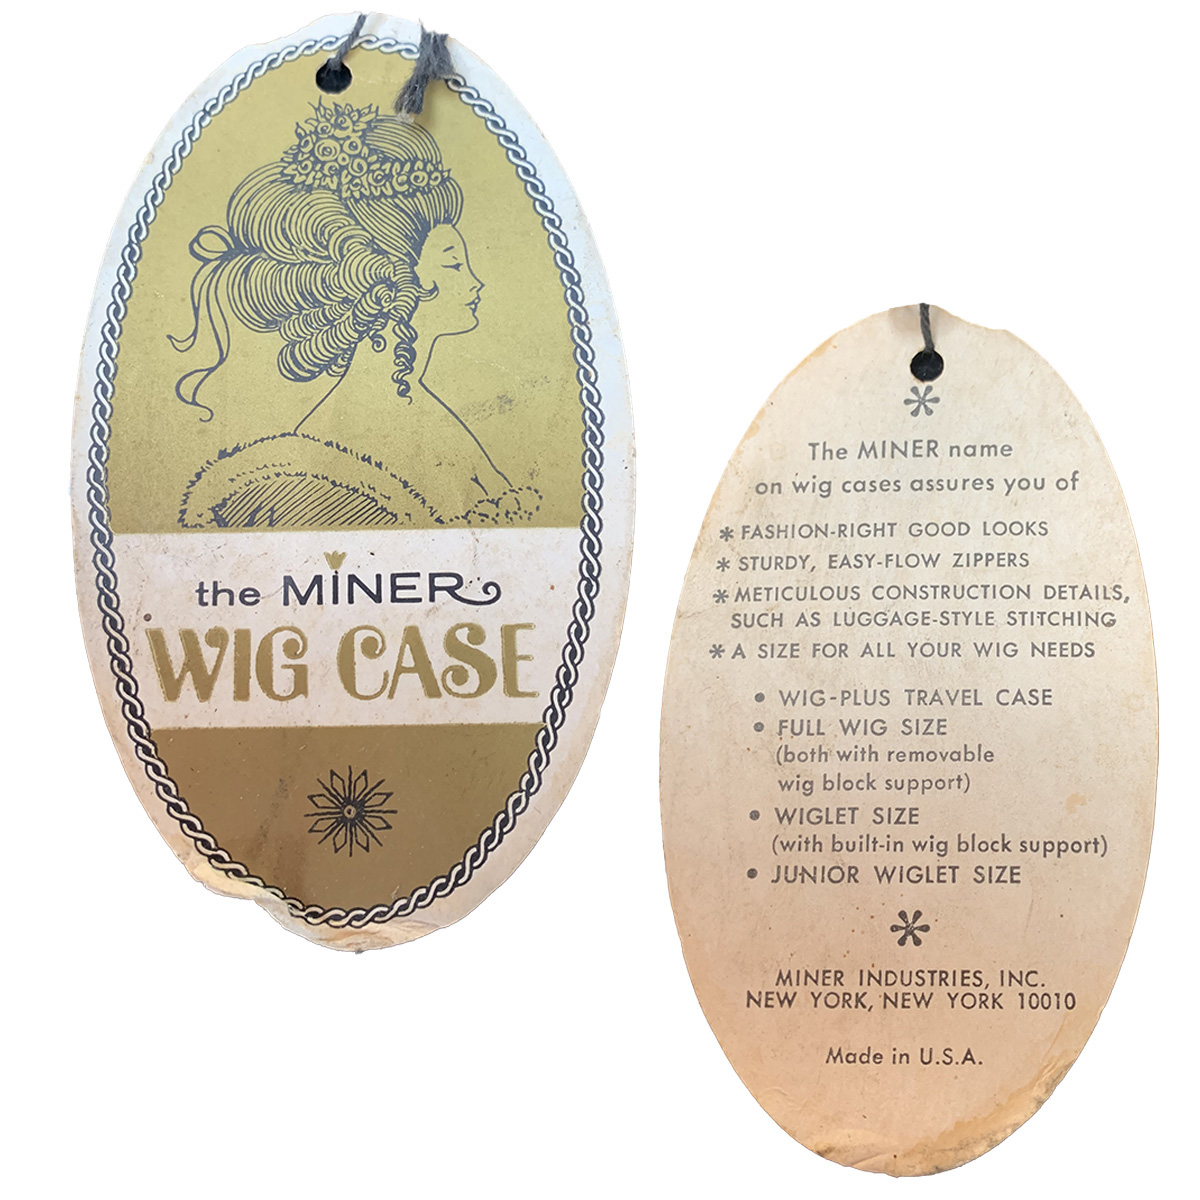 Miner wig case label